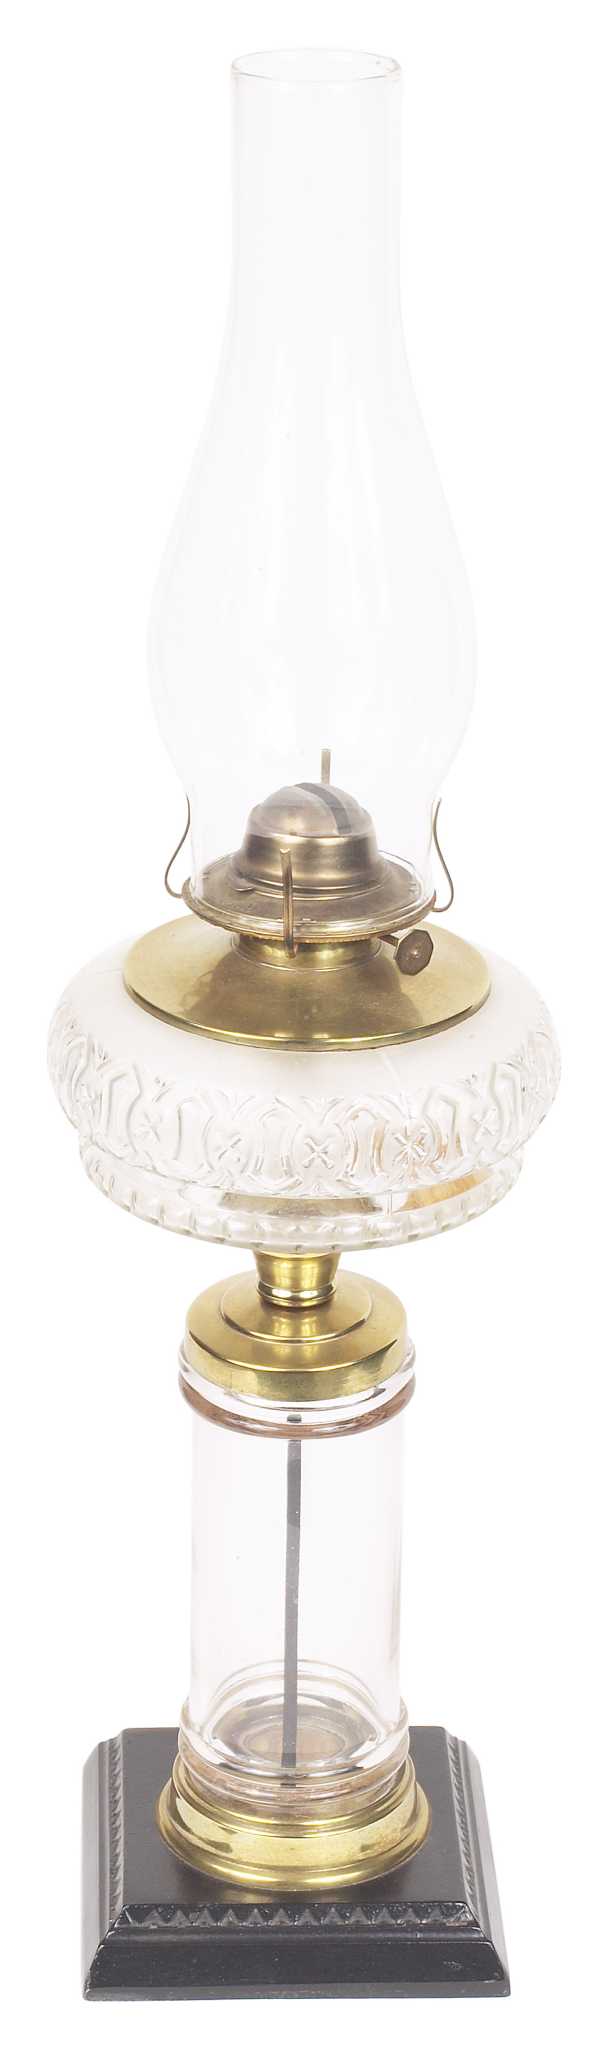 Lamp Wick Lantern Wick - Lantern Wicks 3 Rolls 1/2 Inch Flat Cotton Oil  Lamp Wic